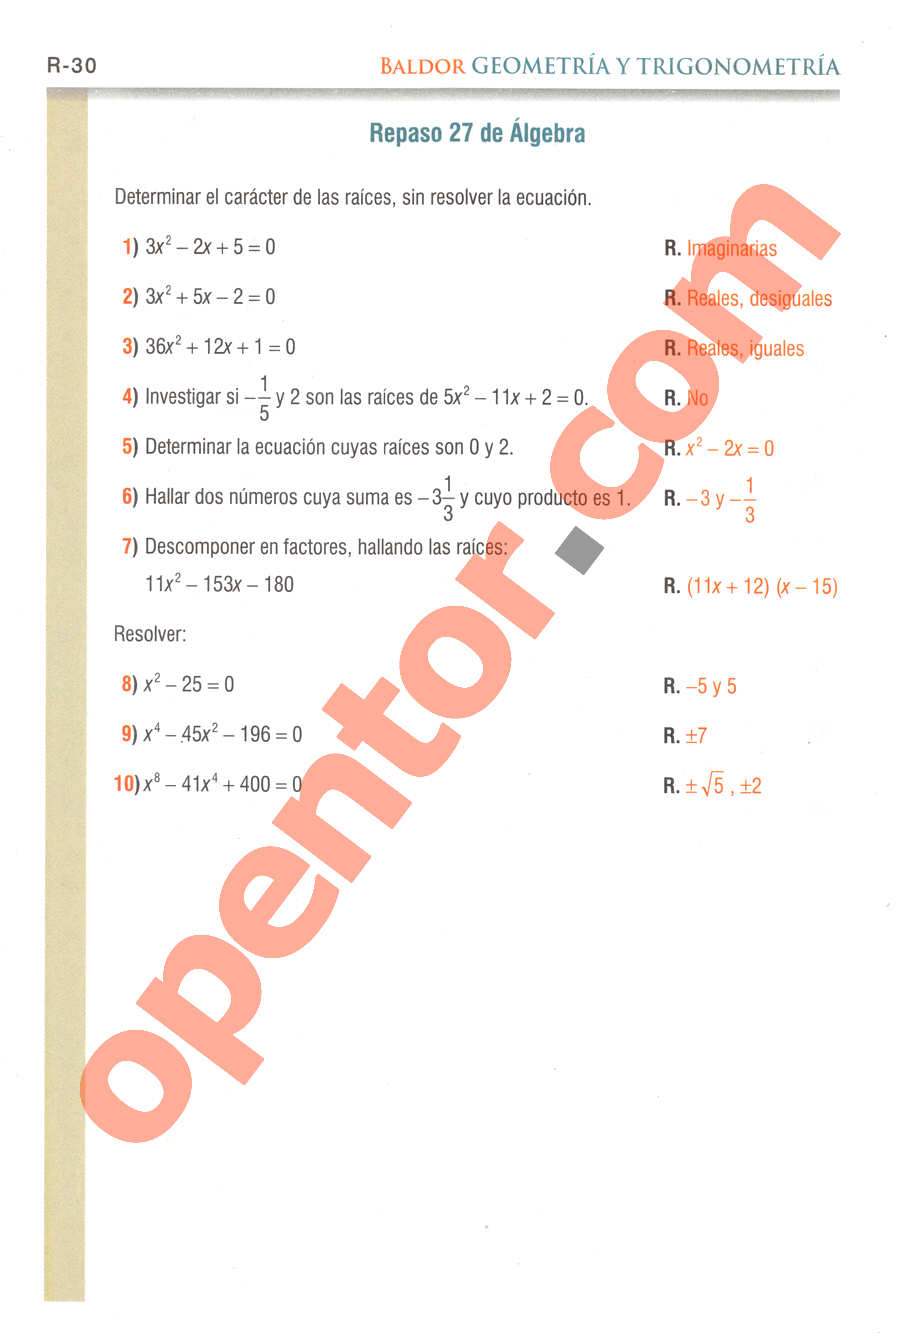 Geometría y Trigonometría de Baldor - Página R30